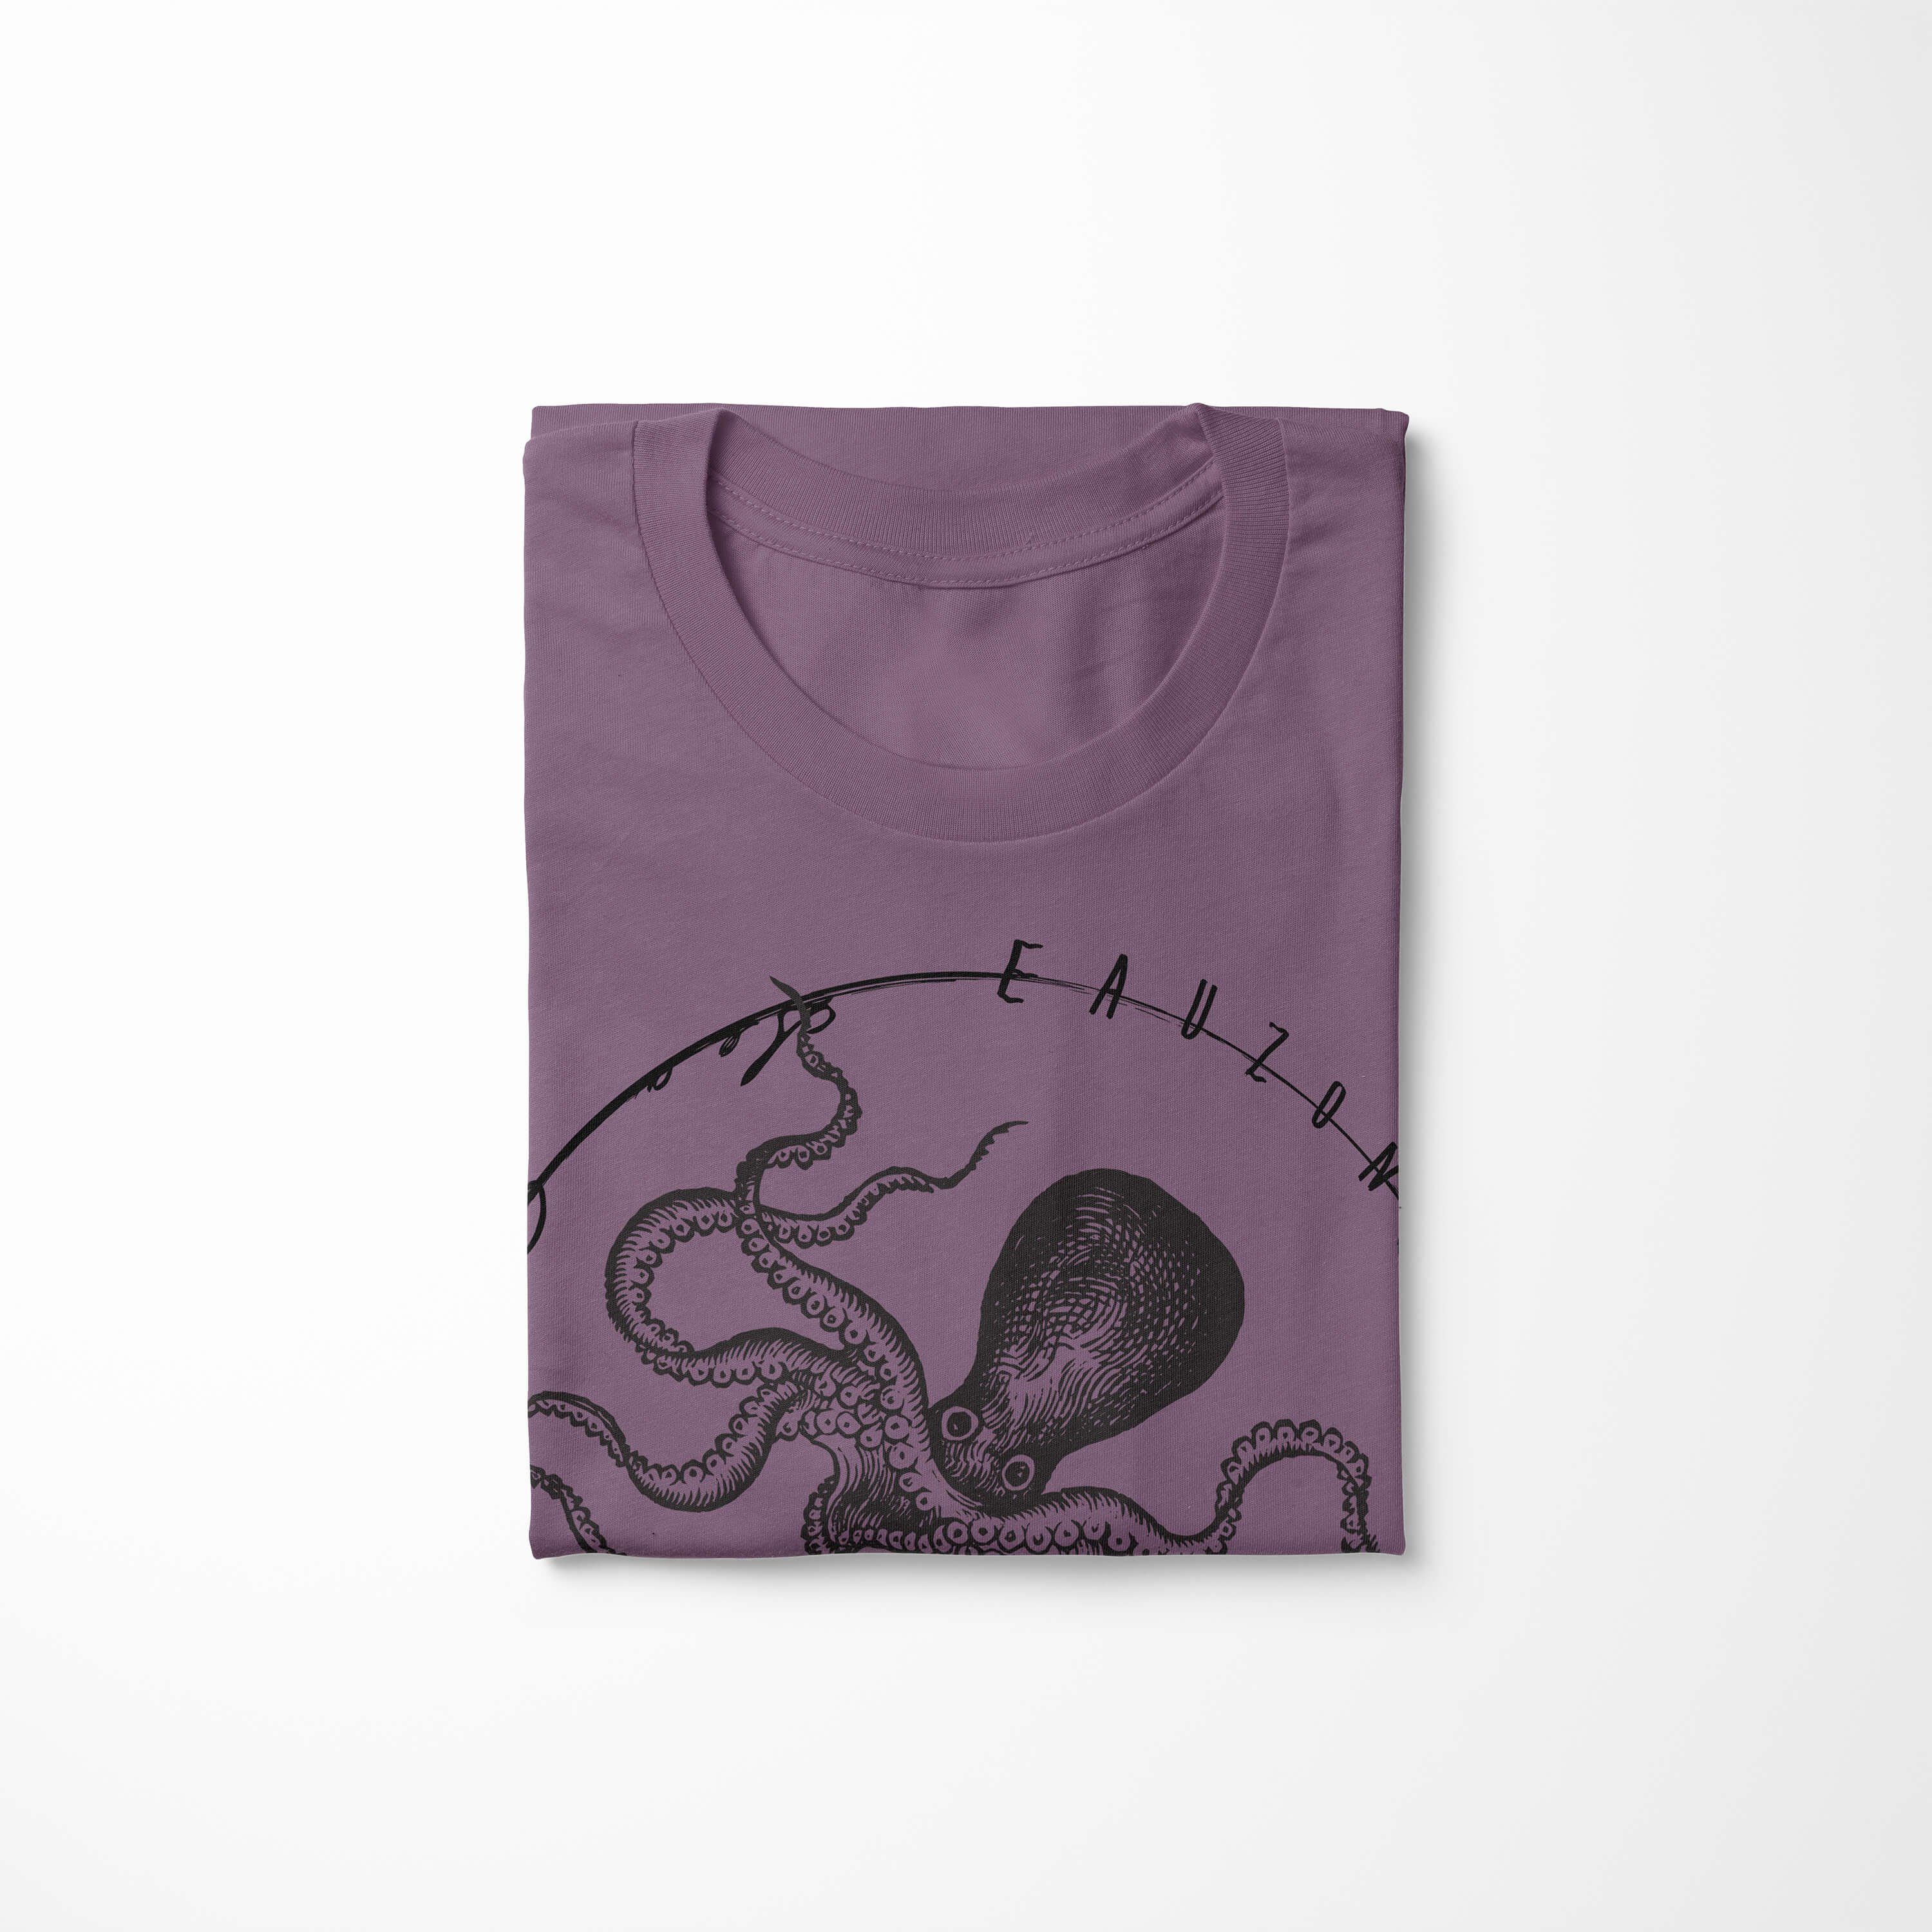 Serie: Tiefsee Fische Sea T-Shirt Shiraz feine Sinus und T-Shirt - / Creatures, Struktur 084 Schnitt Sea Art sportlicher